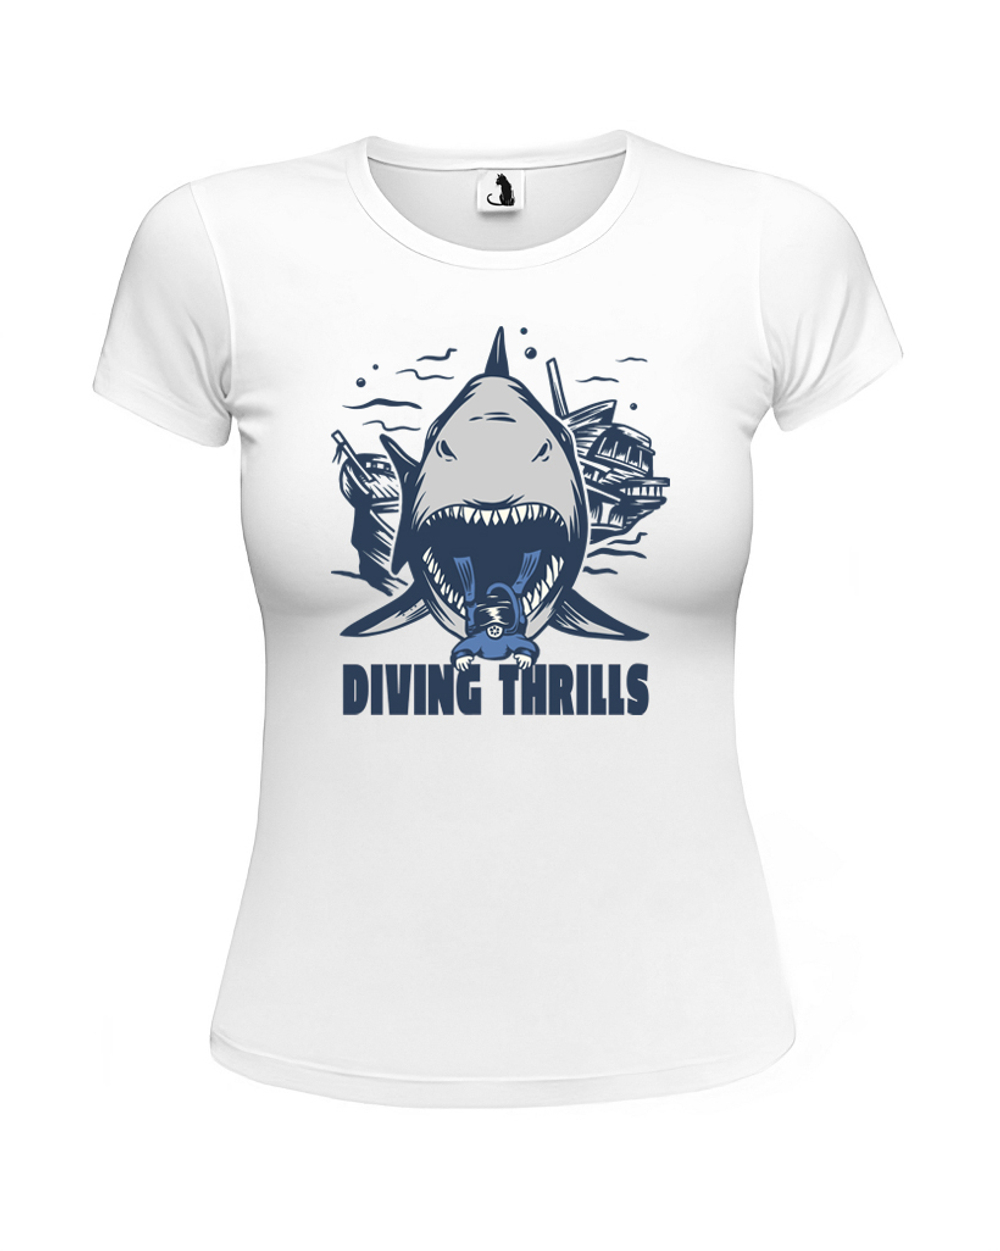 Футболка Diving Thrill женская приталенная белая